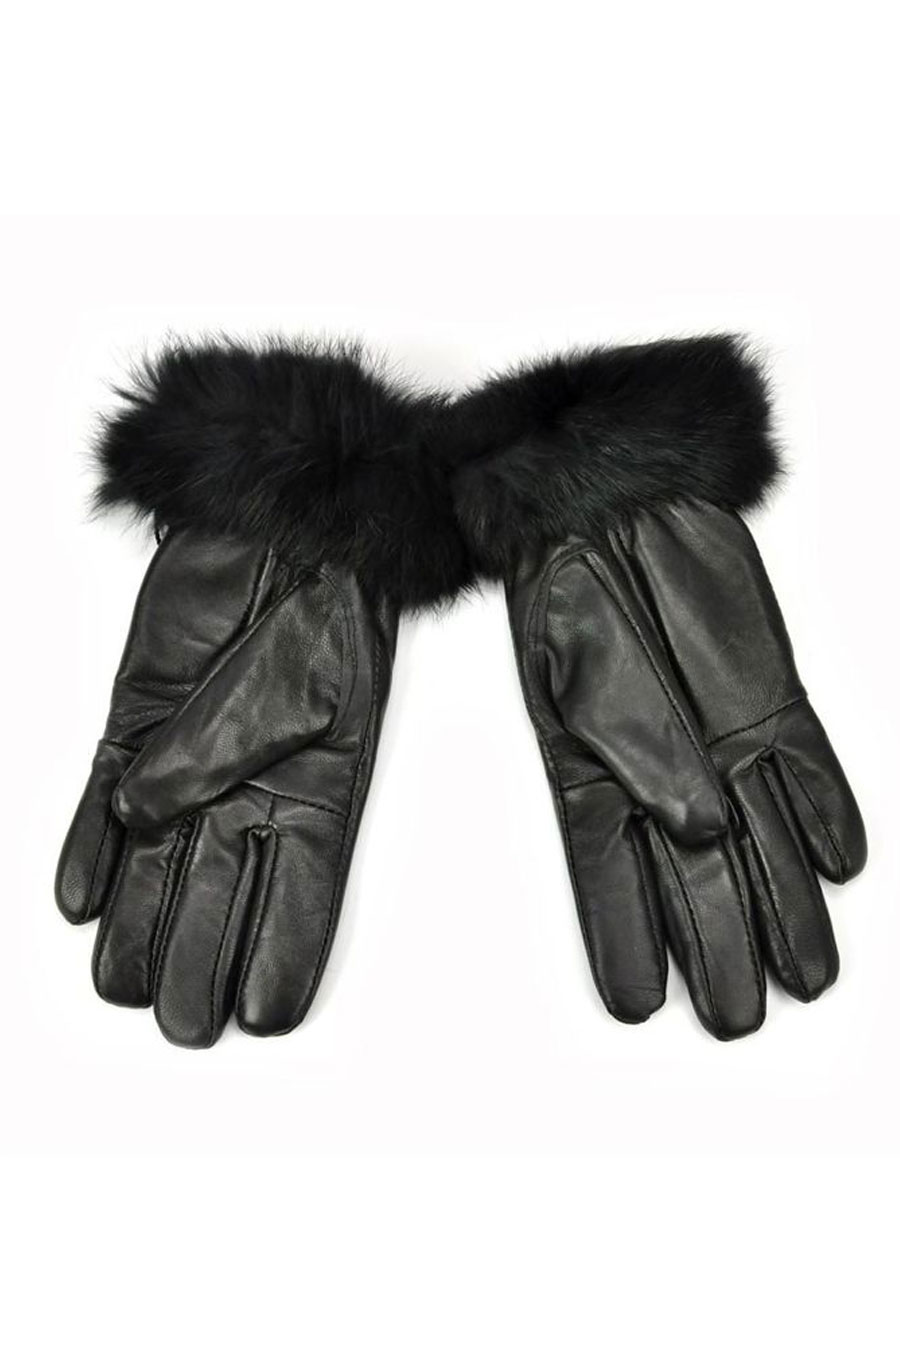 Handschuhe PIERRE CARDIN PC-G694-BLACK